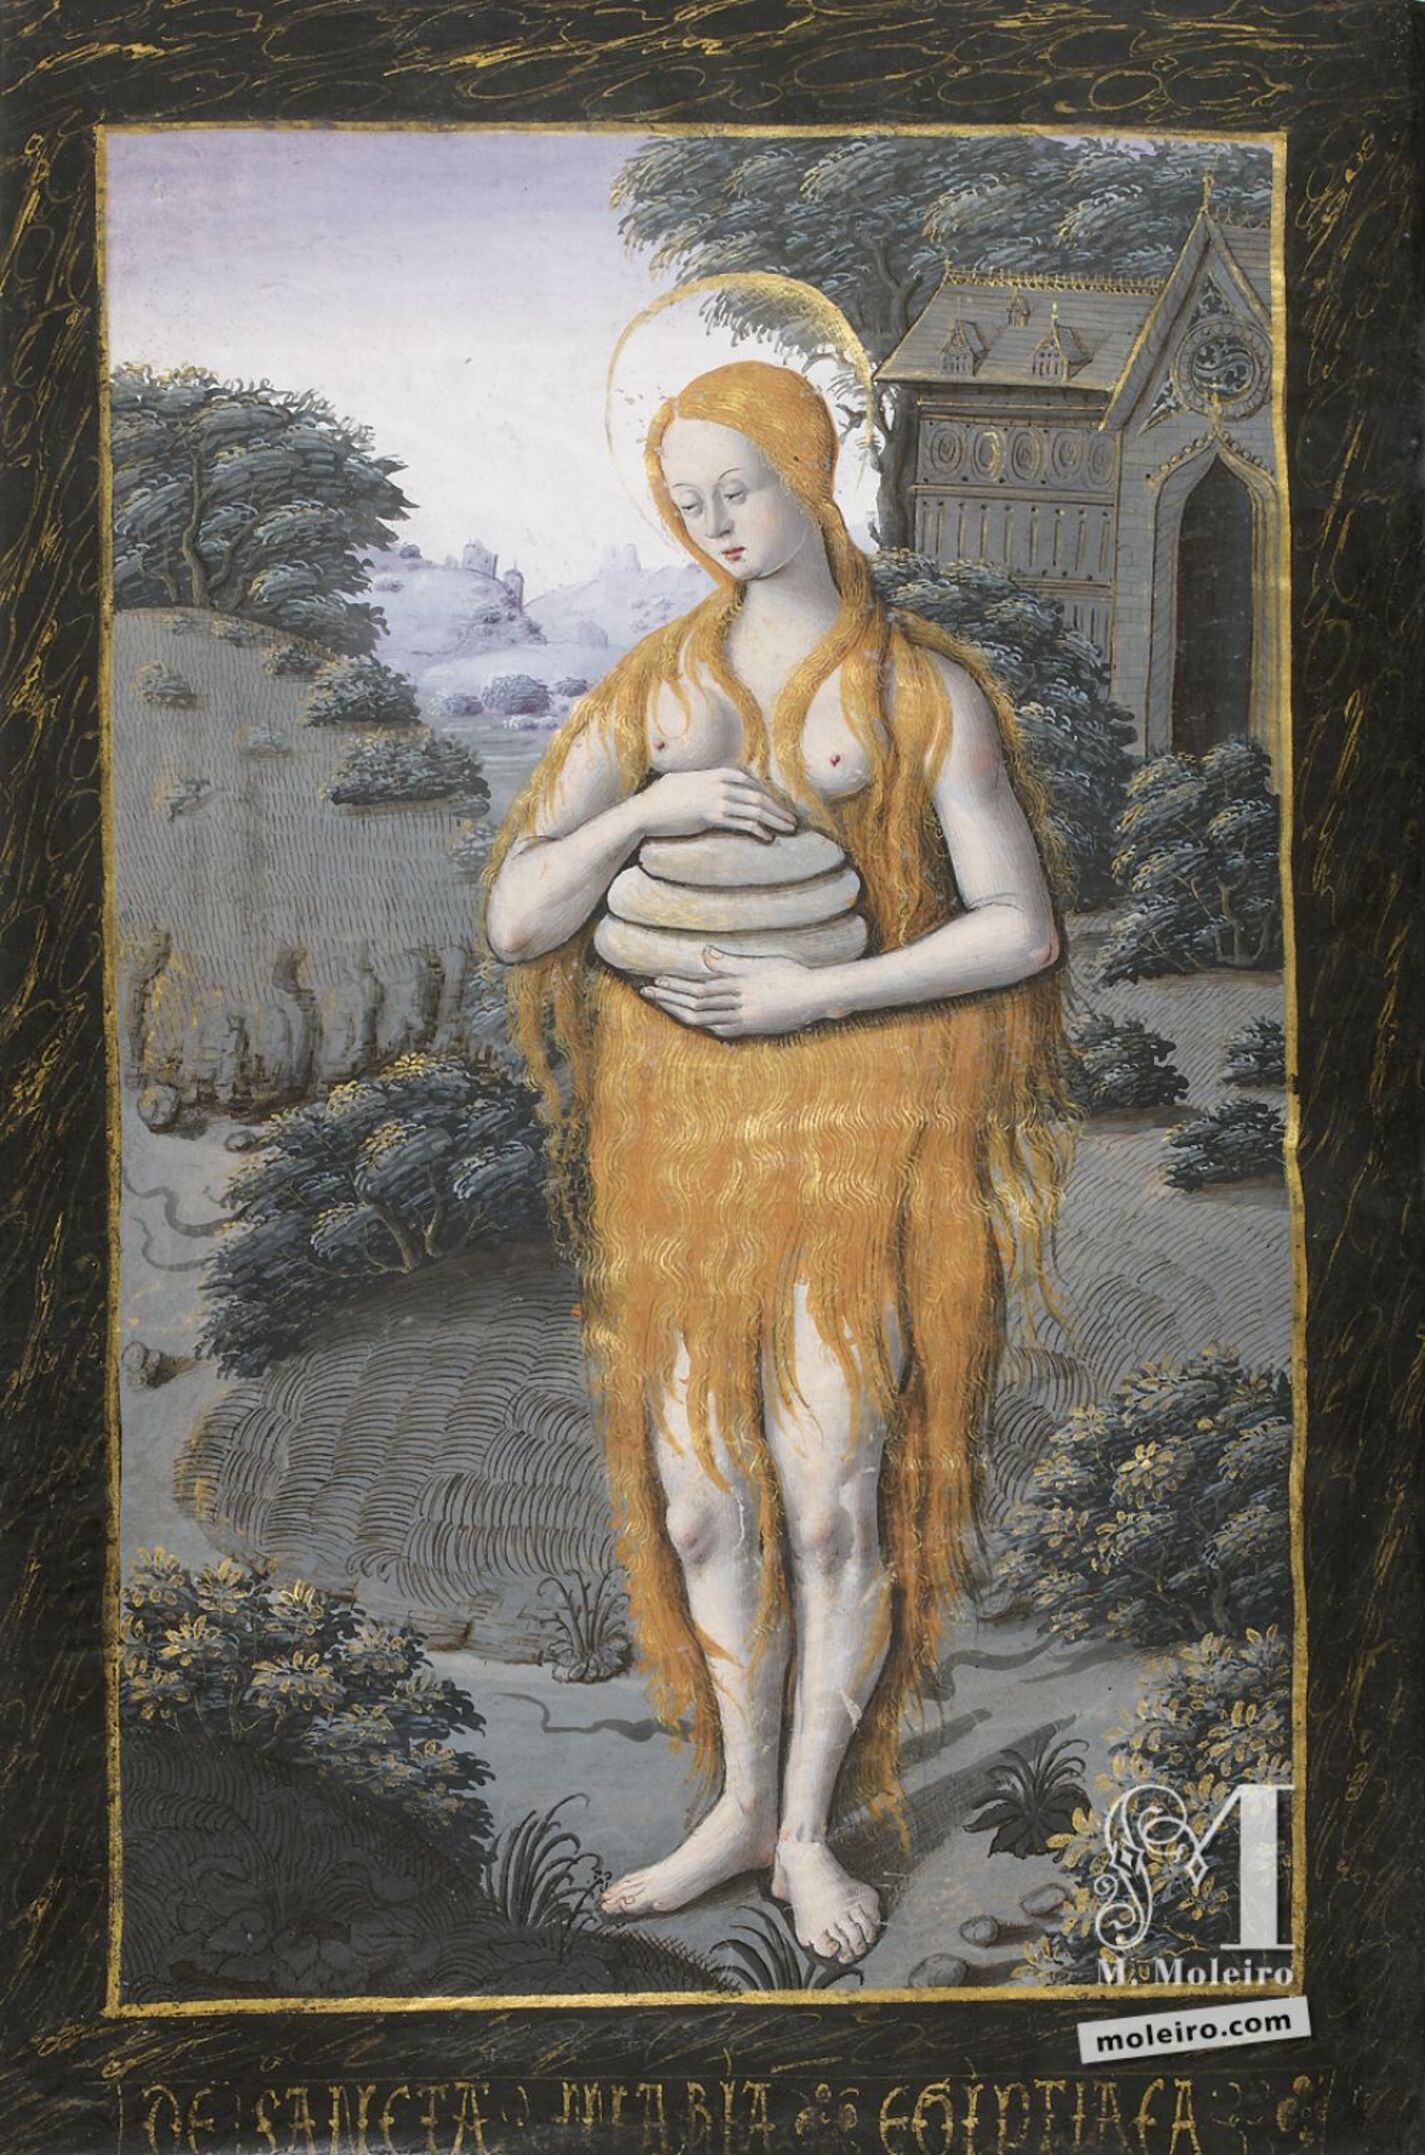 Santa María de Egipto llevando tres tortas y sin otra ropa que su pelo largo y frondoso, f. 88v